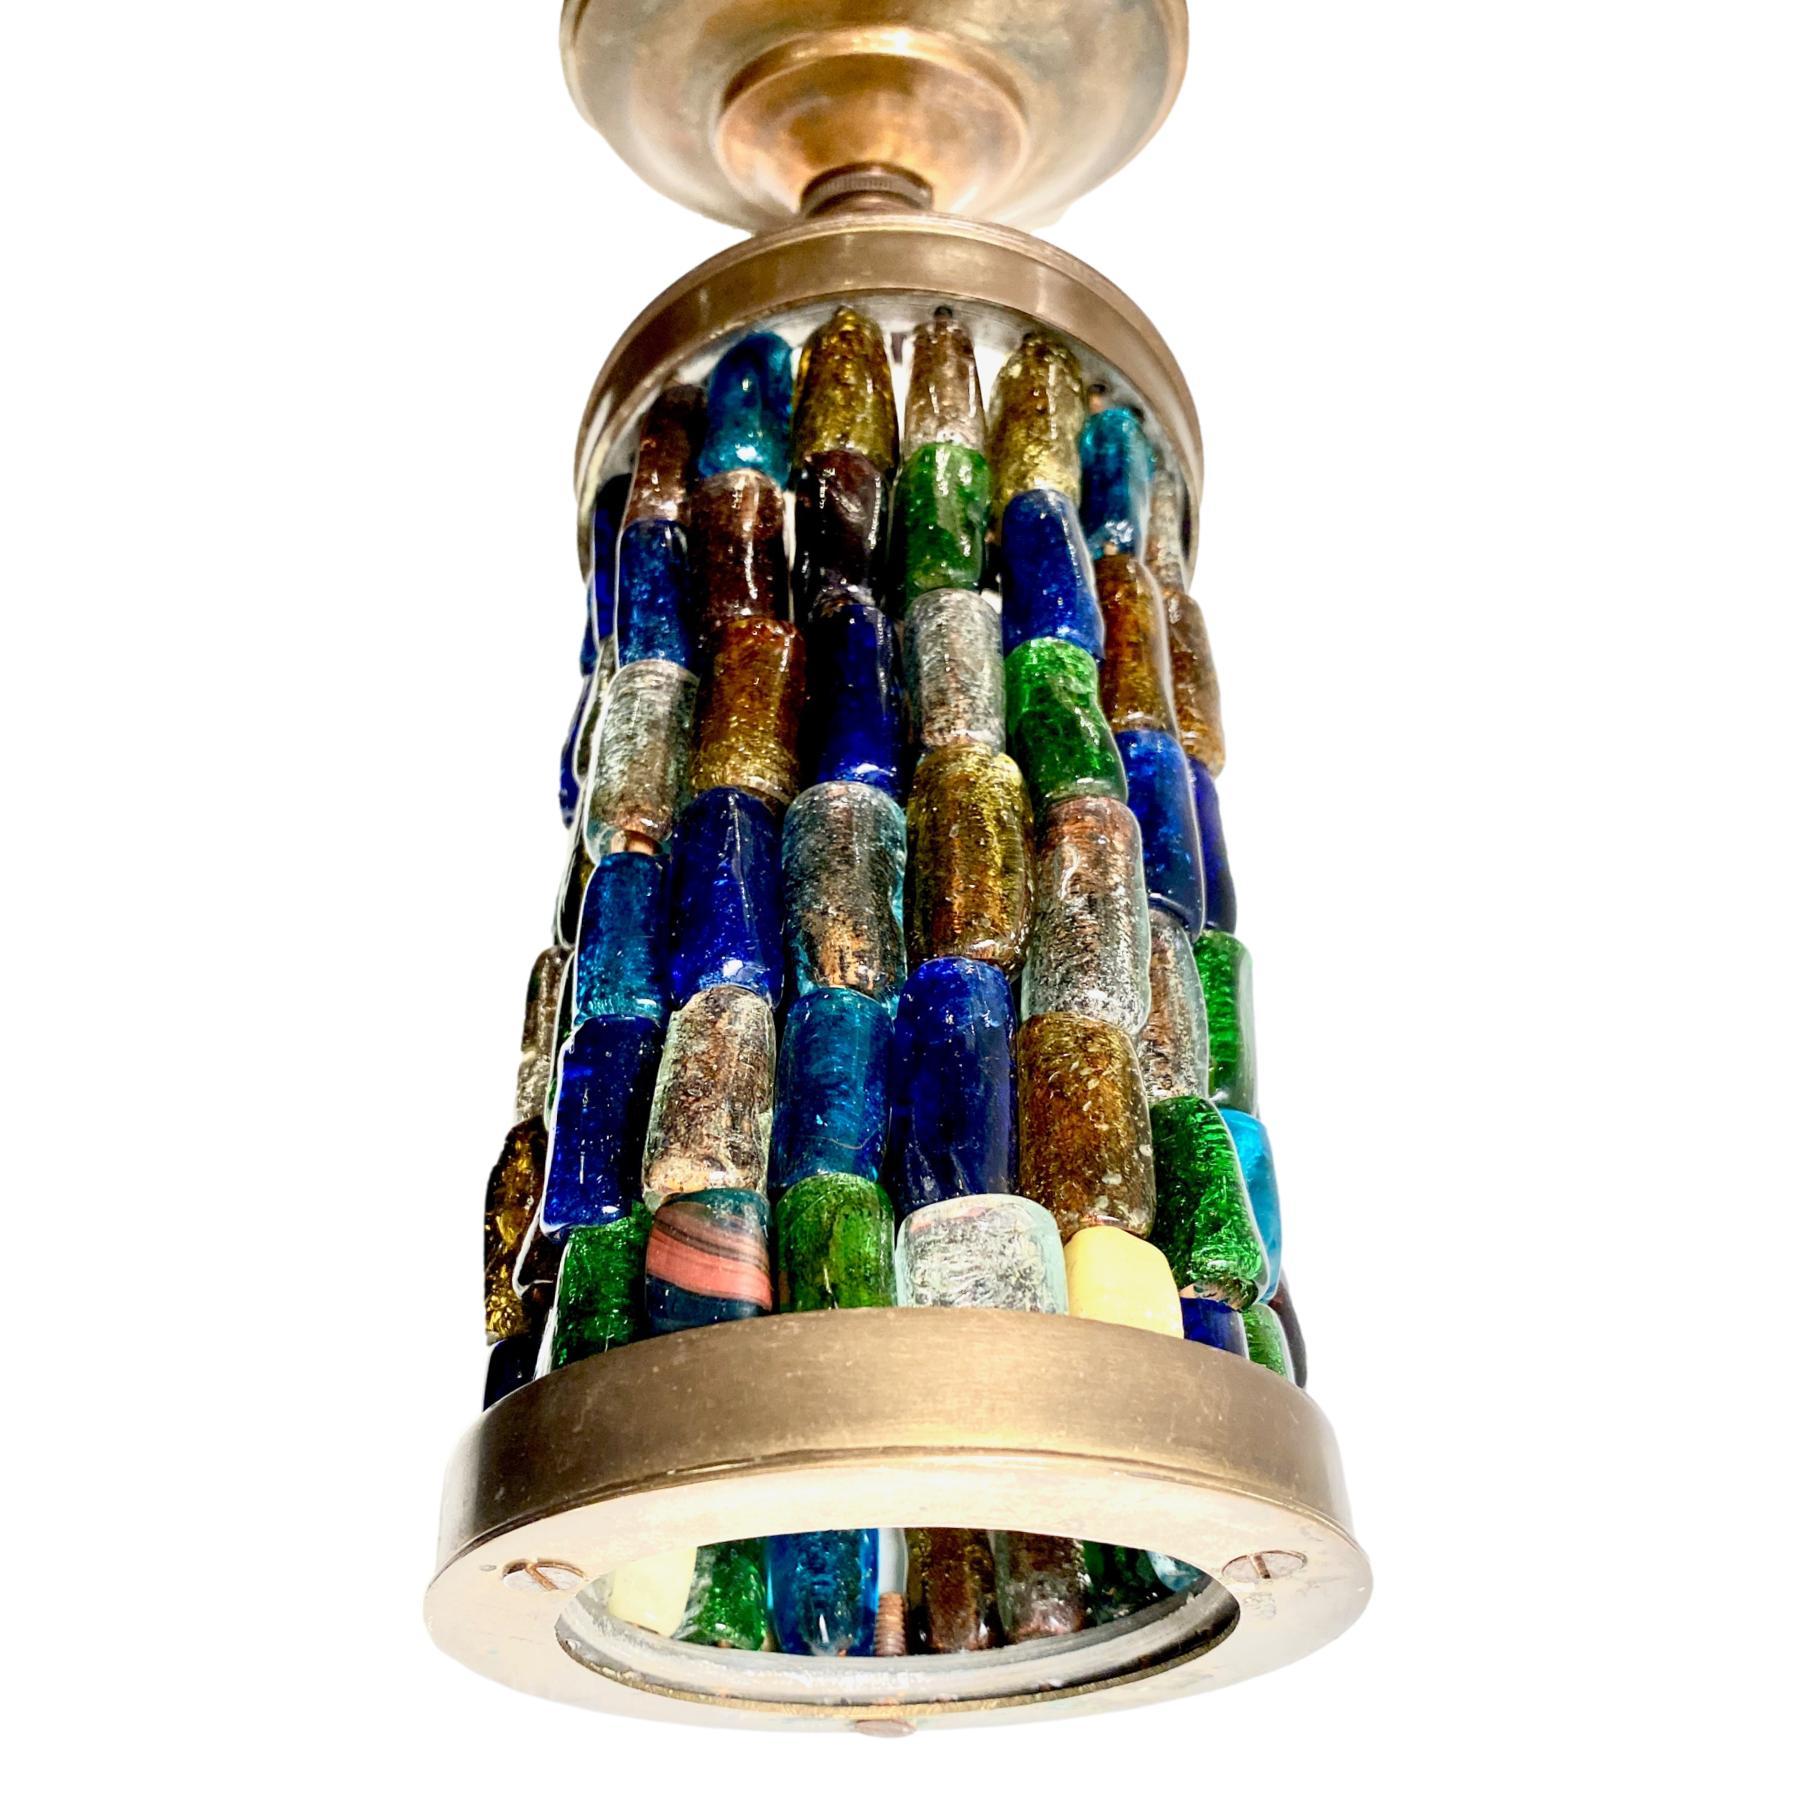 Une lanterne en verre d'art américaine datant d'environ 1950 avec une lumière intérieure. 

Mesures :
Drop 13.5